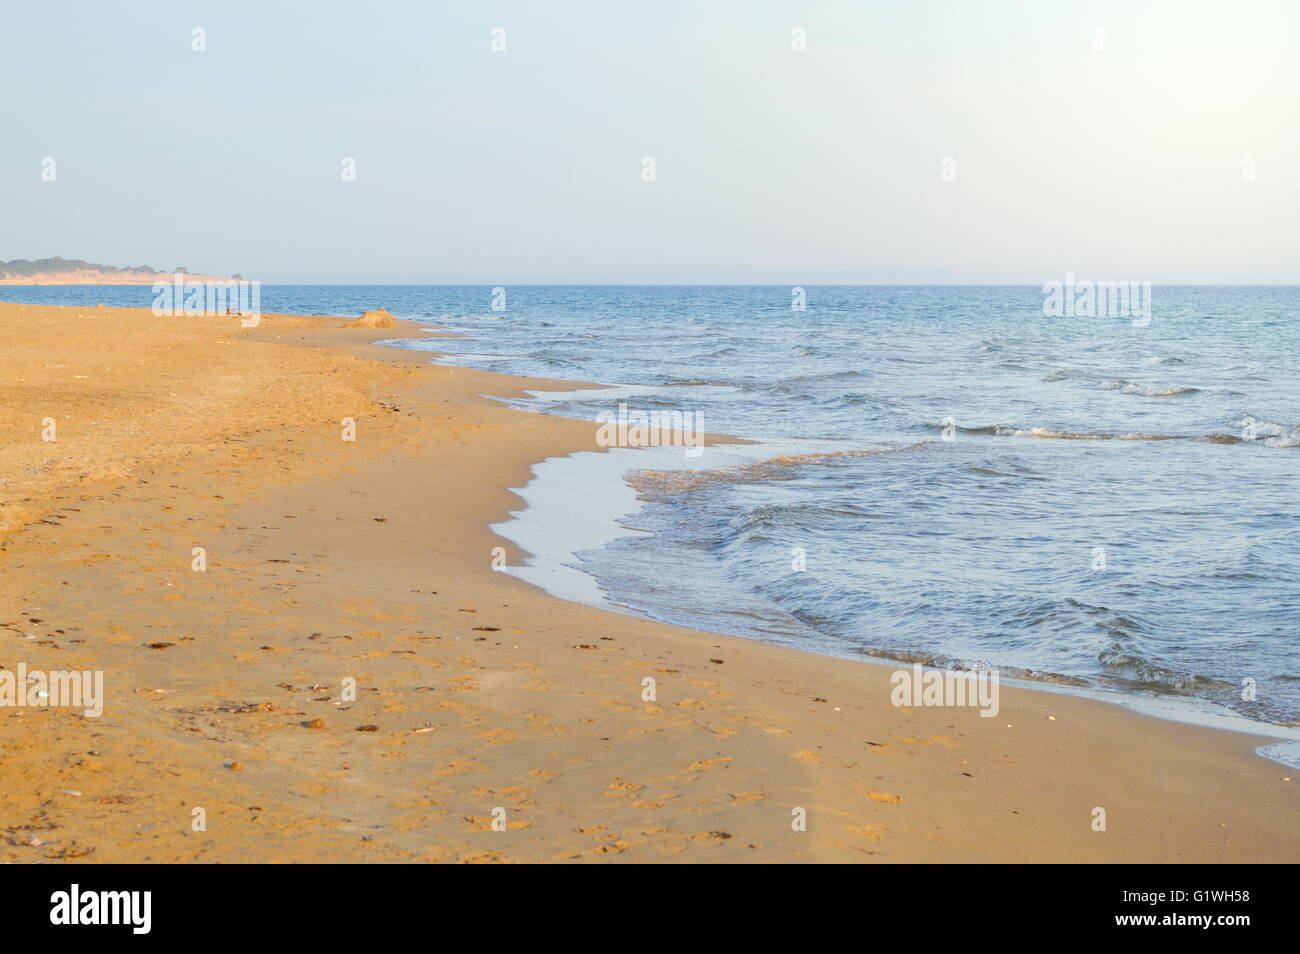 Playa vacía con el mar en calma. Resumen de vacaciones de verano Foto de stock